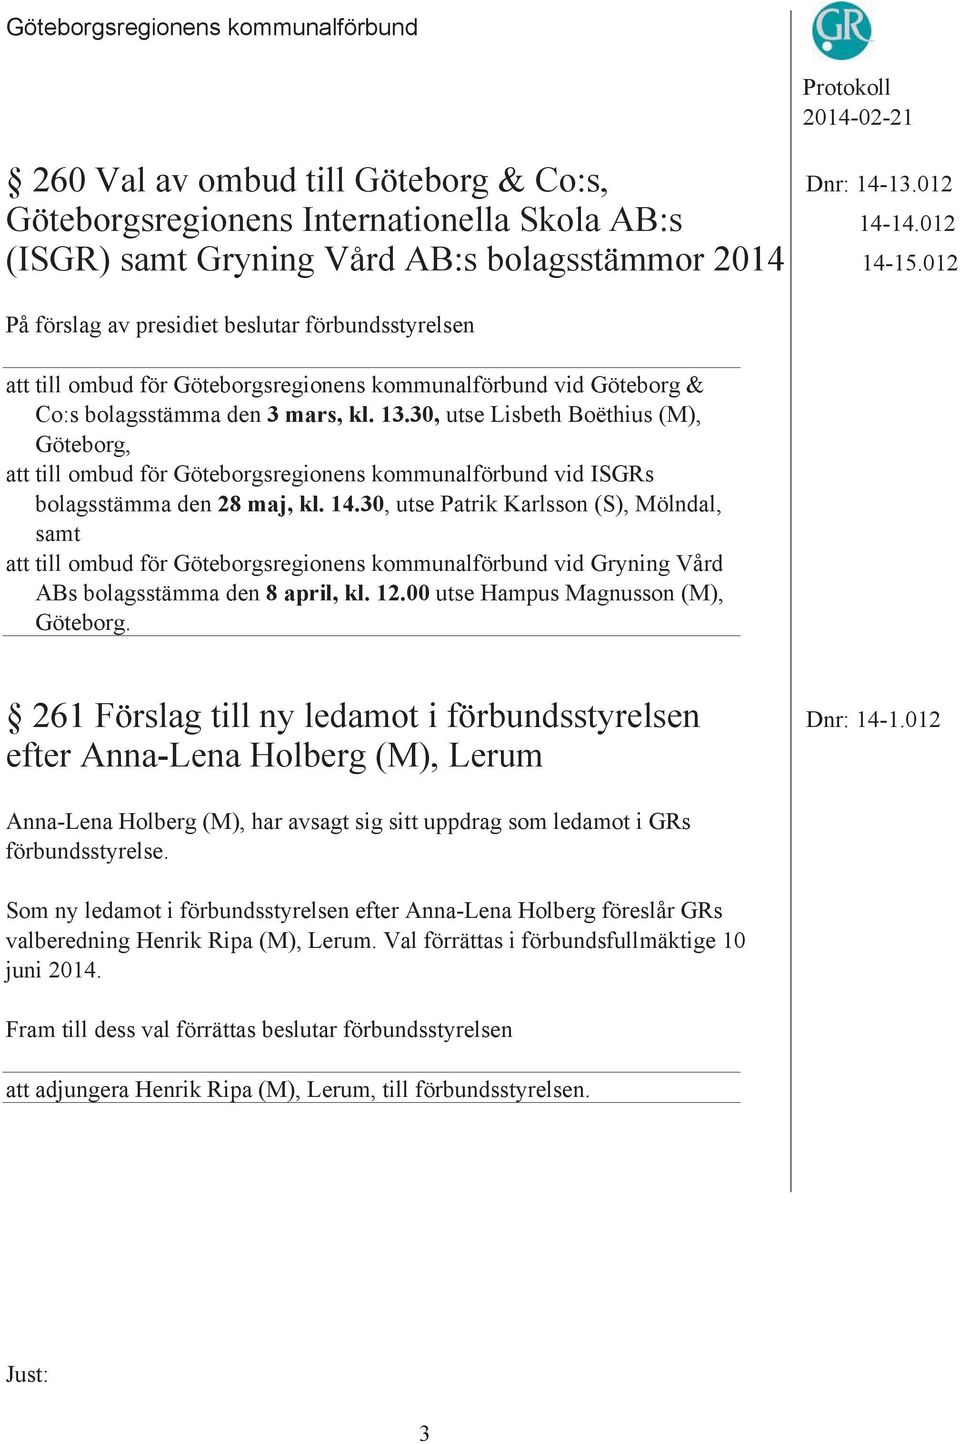 30, utse Lisbeth Boëthius (M), Göteborg, att till ombud för Göteborgsregionens kommunalförbund vid ISGRs bolagsstämma den 28 maj, kl. 14.